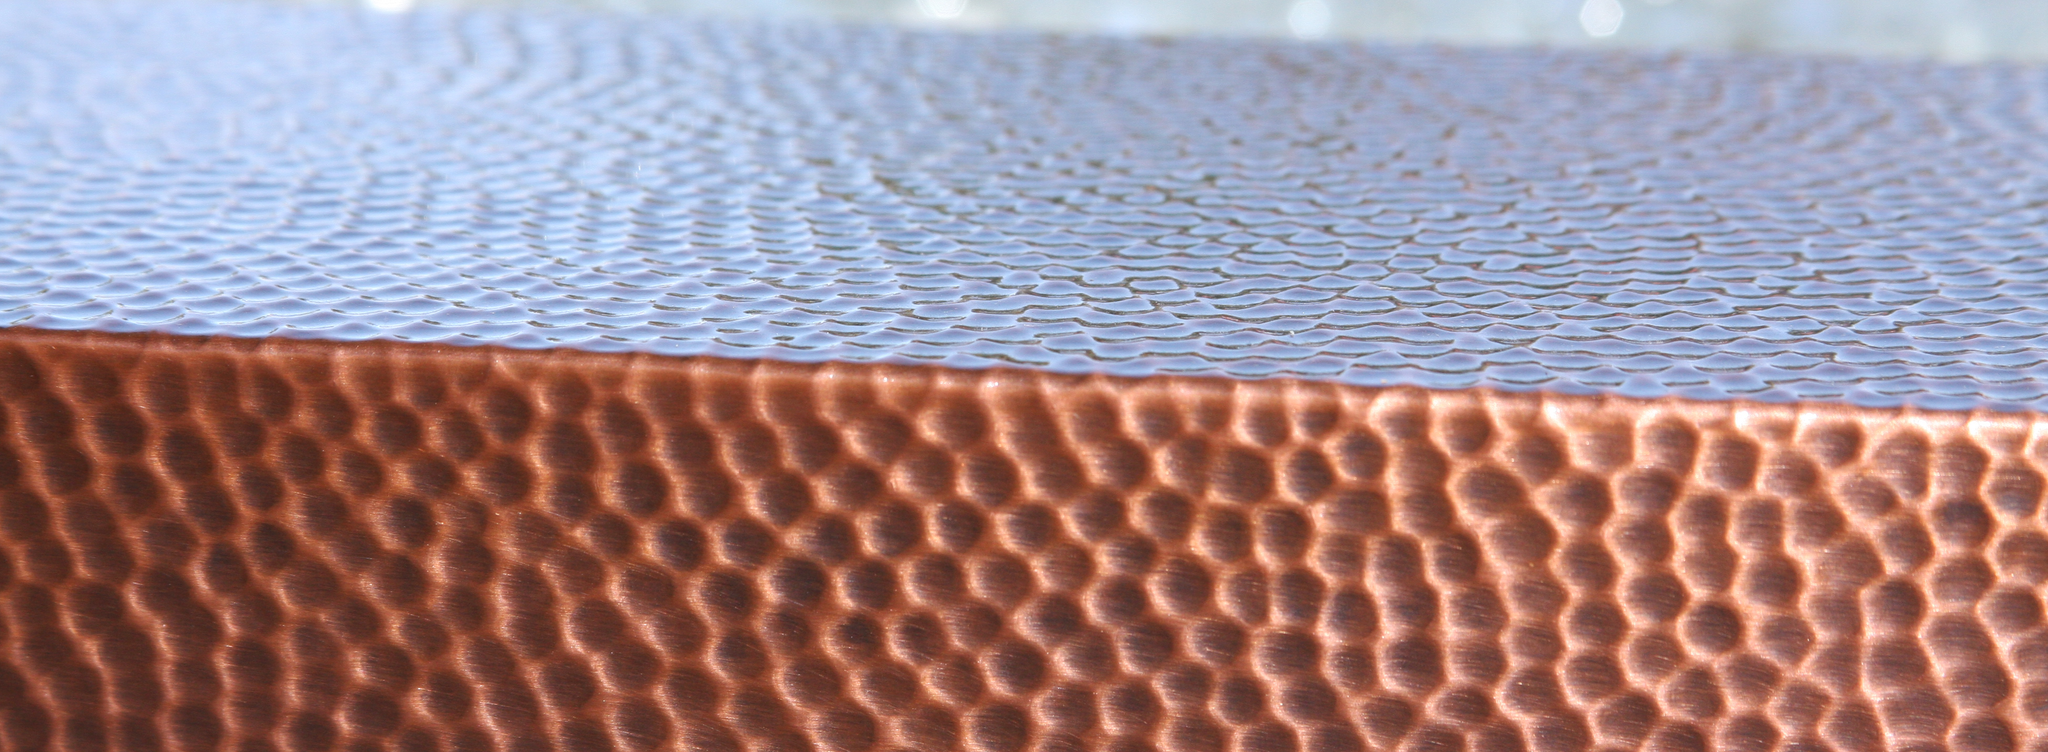 Machine Hammered Copper by Starfire Designs